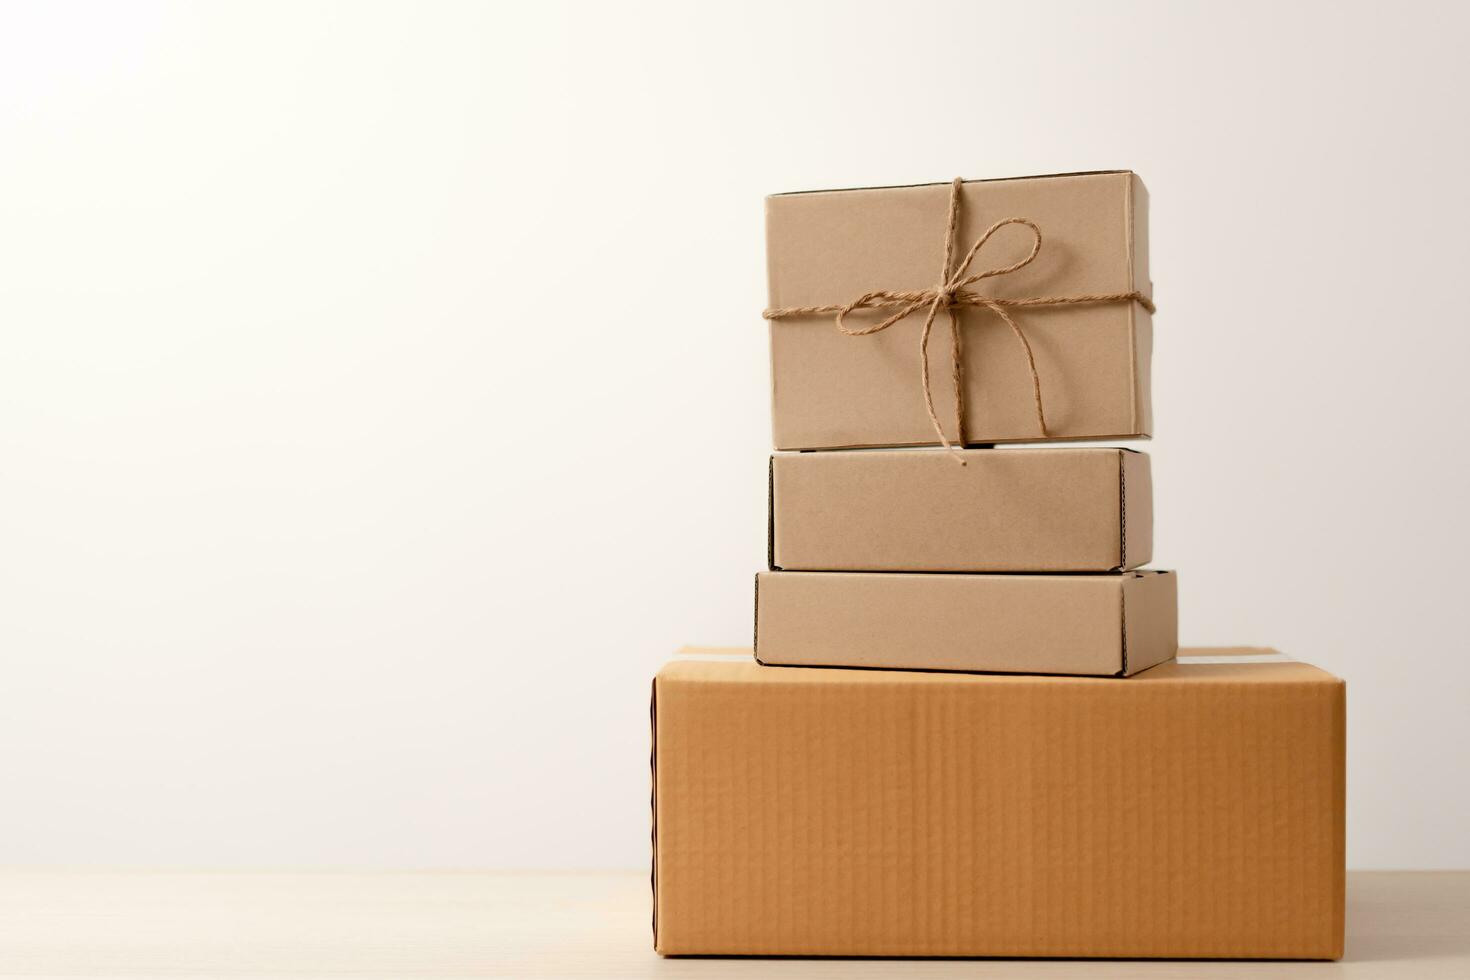 vrouw handen Holding Cadeau doos met een lint boog. concept van geschenk doos minimalistische stijl. tonen bruin karton dozen levering iemand in speciaal gelegenheden of pakket leveren onderhoud. foto